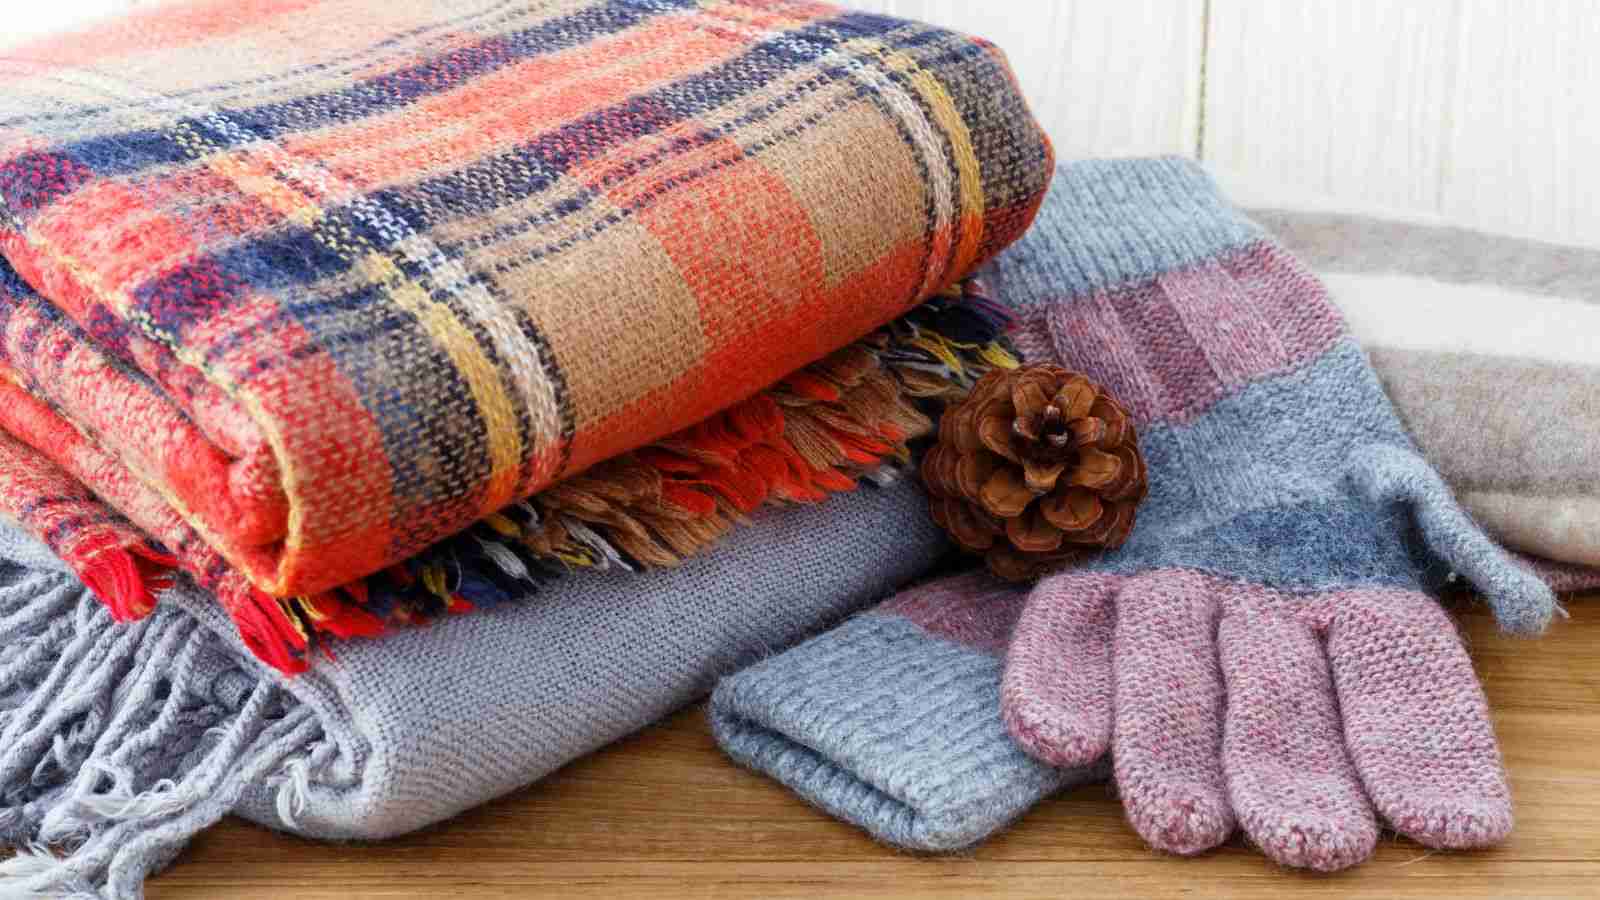 Cobertores e agasalhos